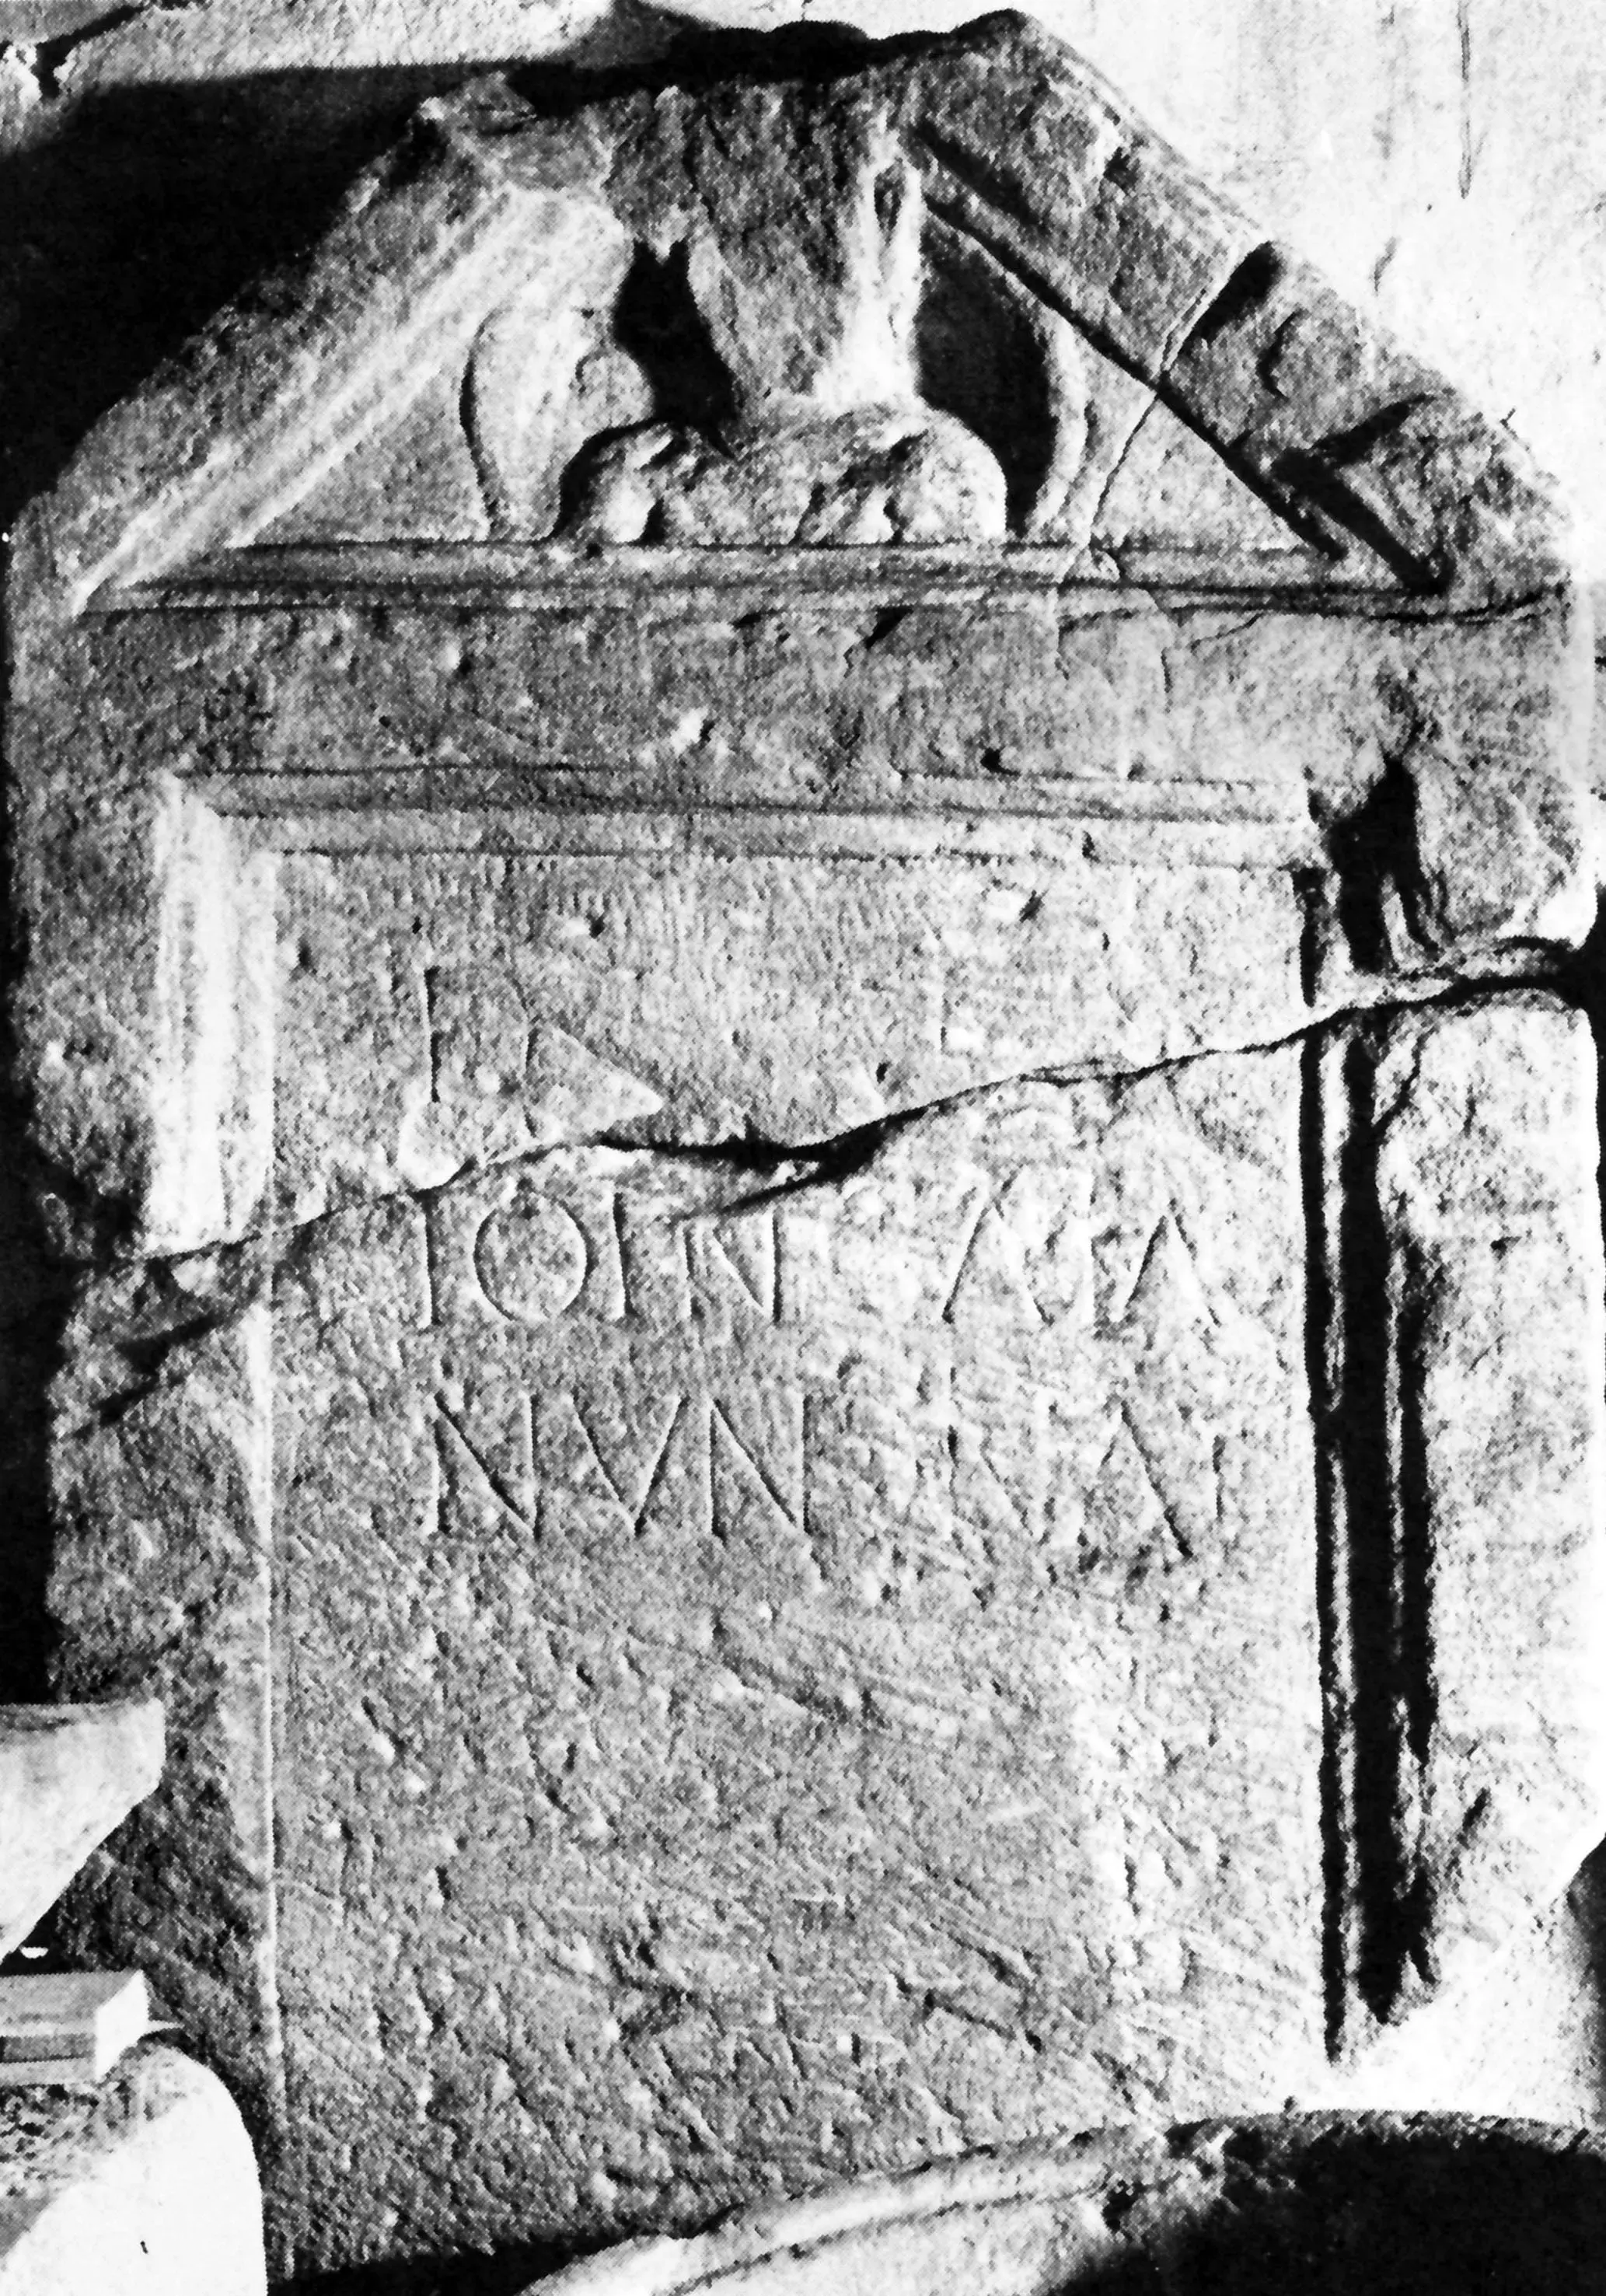 Grabstein mit Inschrift